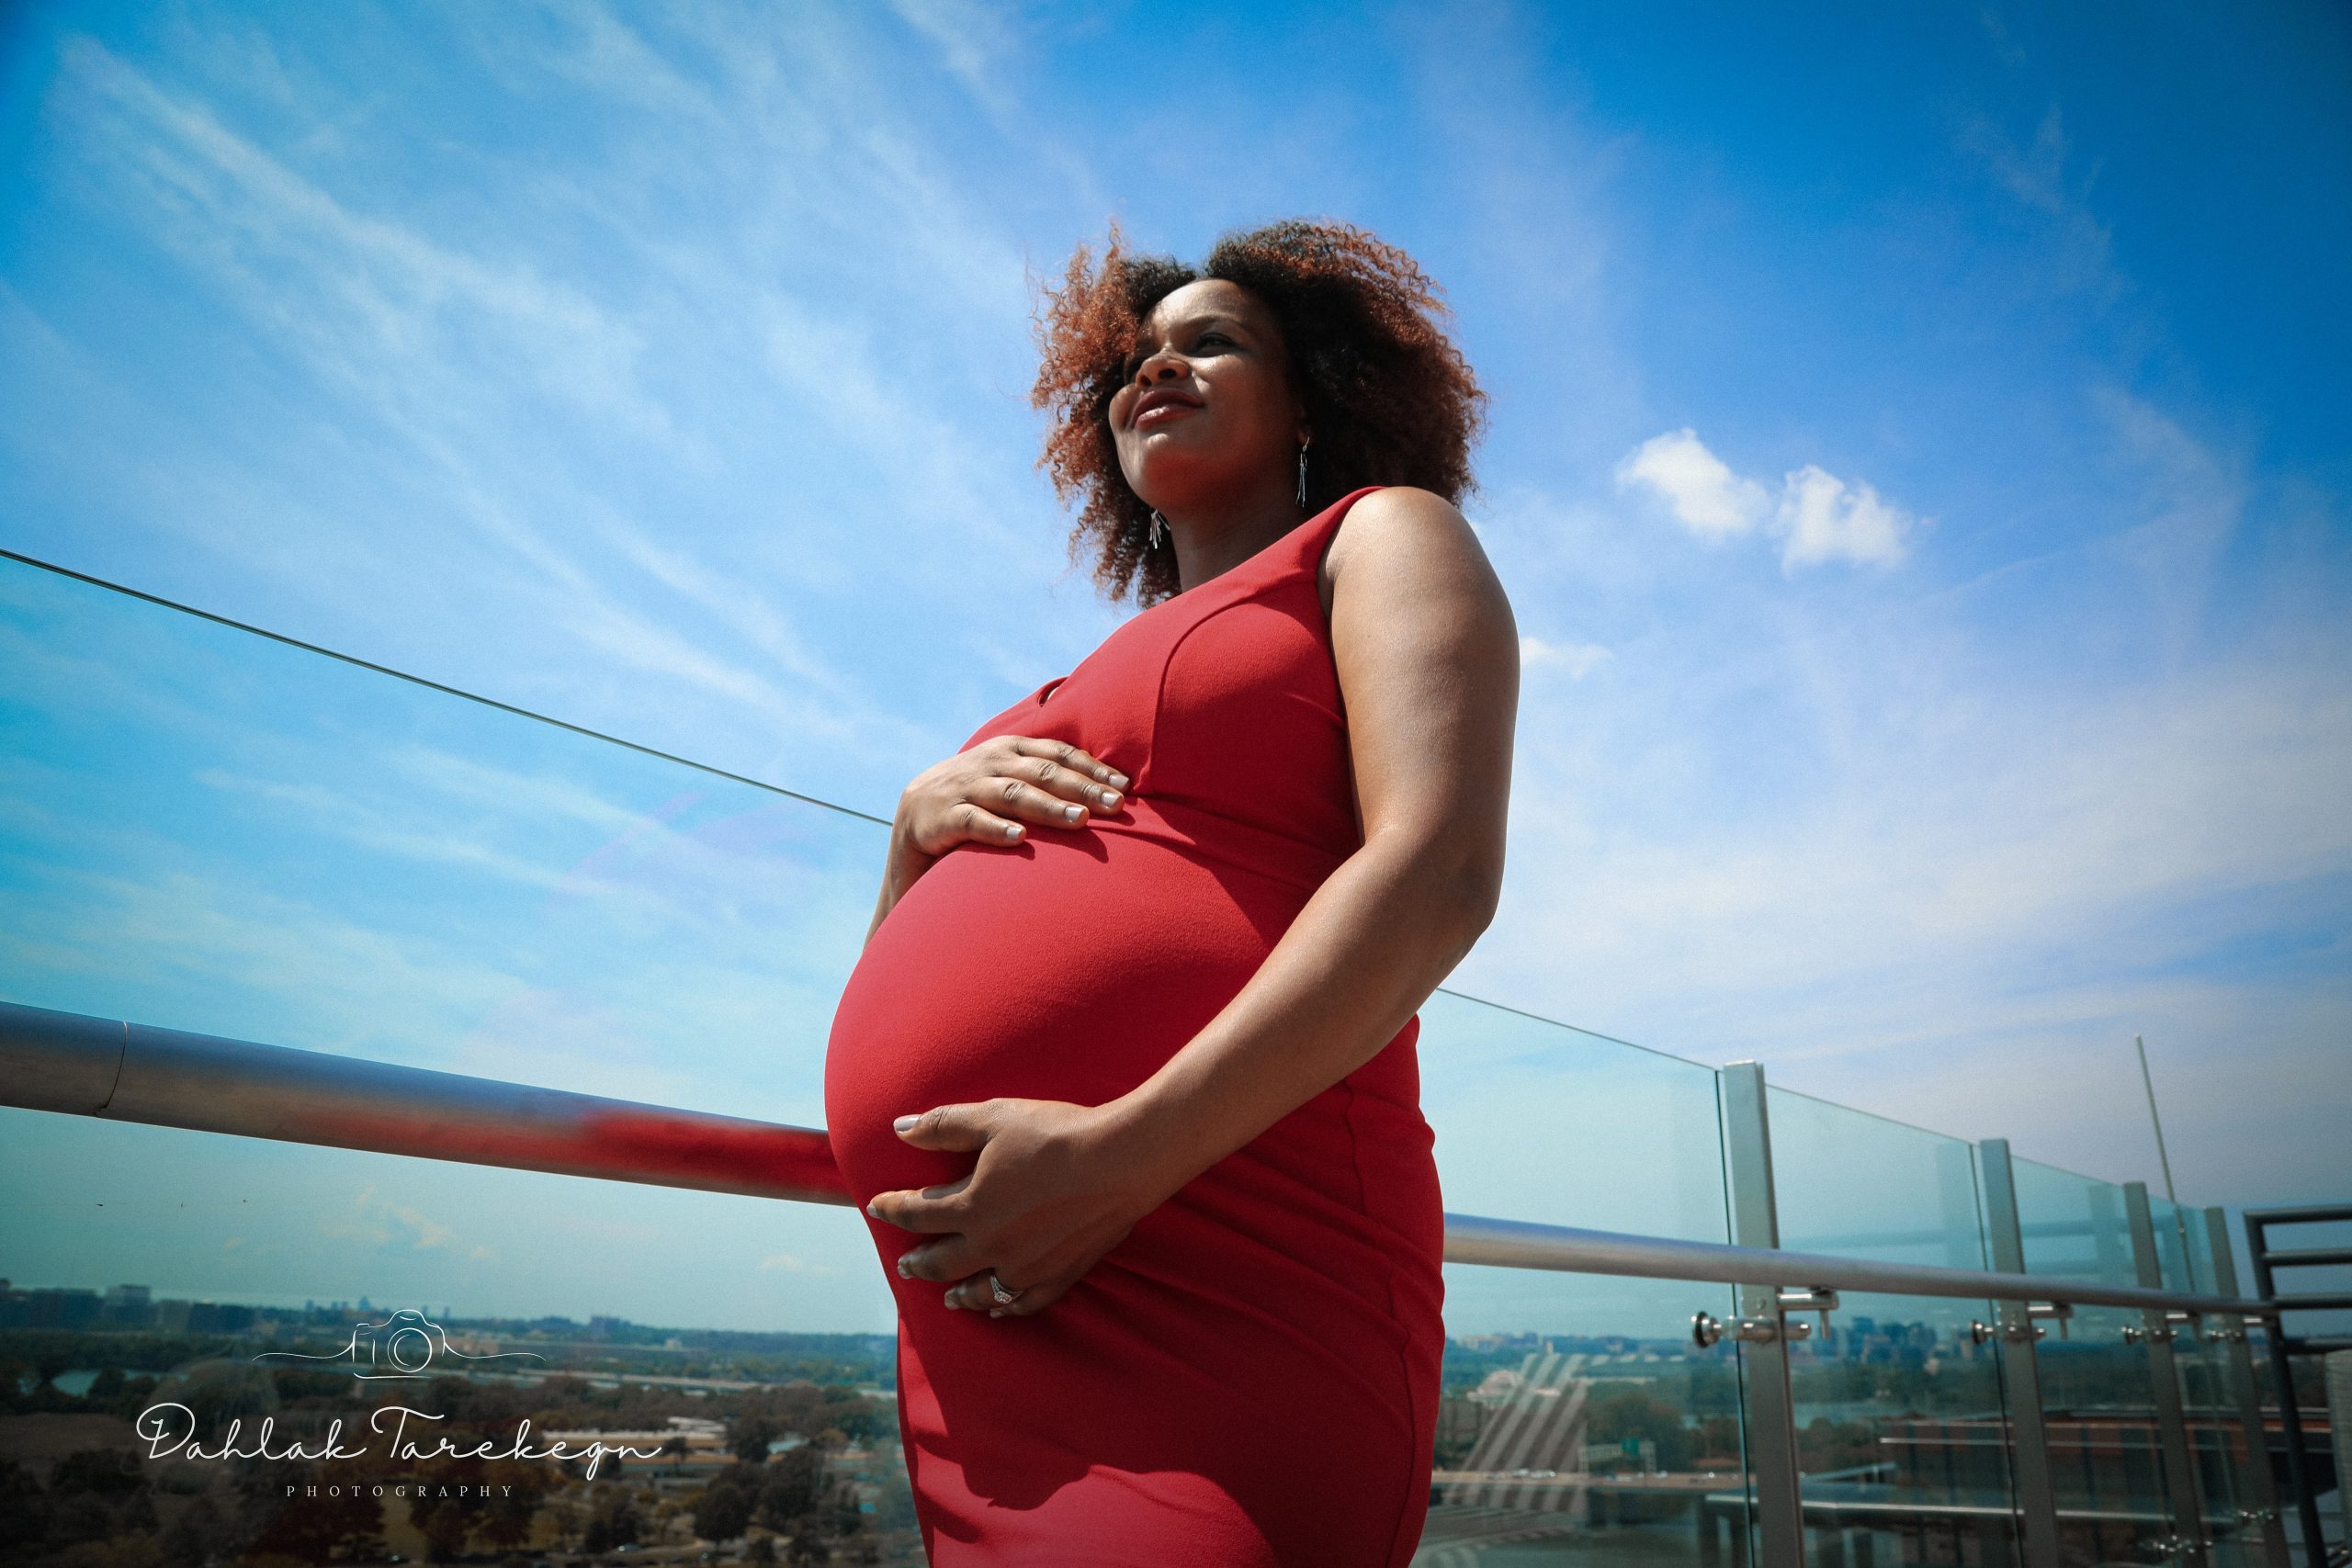 Stillbirth Prevention Campaign launches in Charleston, South Carolina